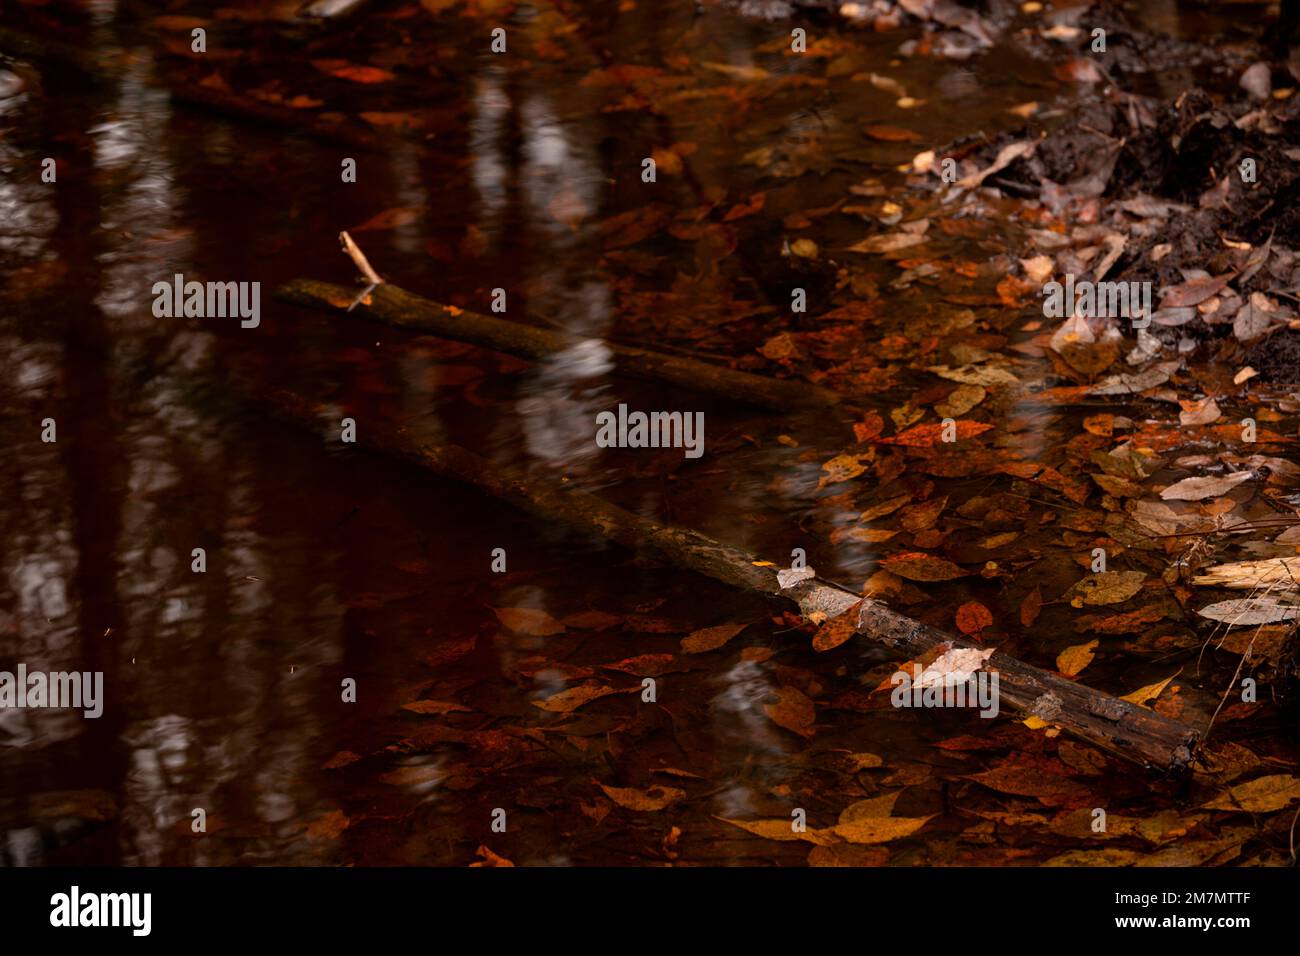 Ein Fluss im Wald, eine wunderschöne Reflexion auf der Oberfläche des klaren Wassers, eine Herbstszene Stockfoto